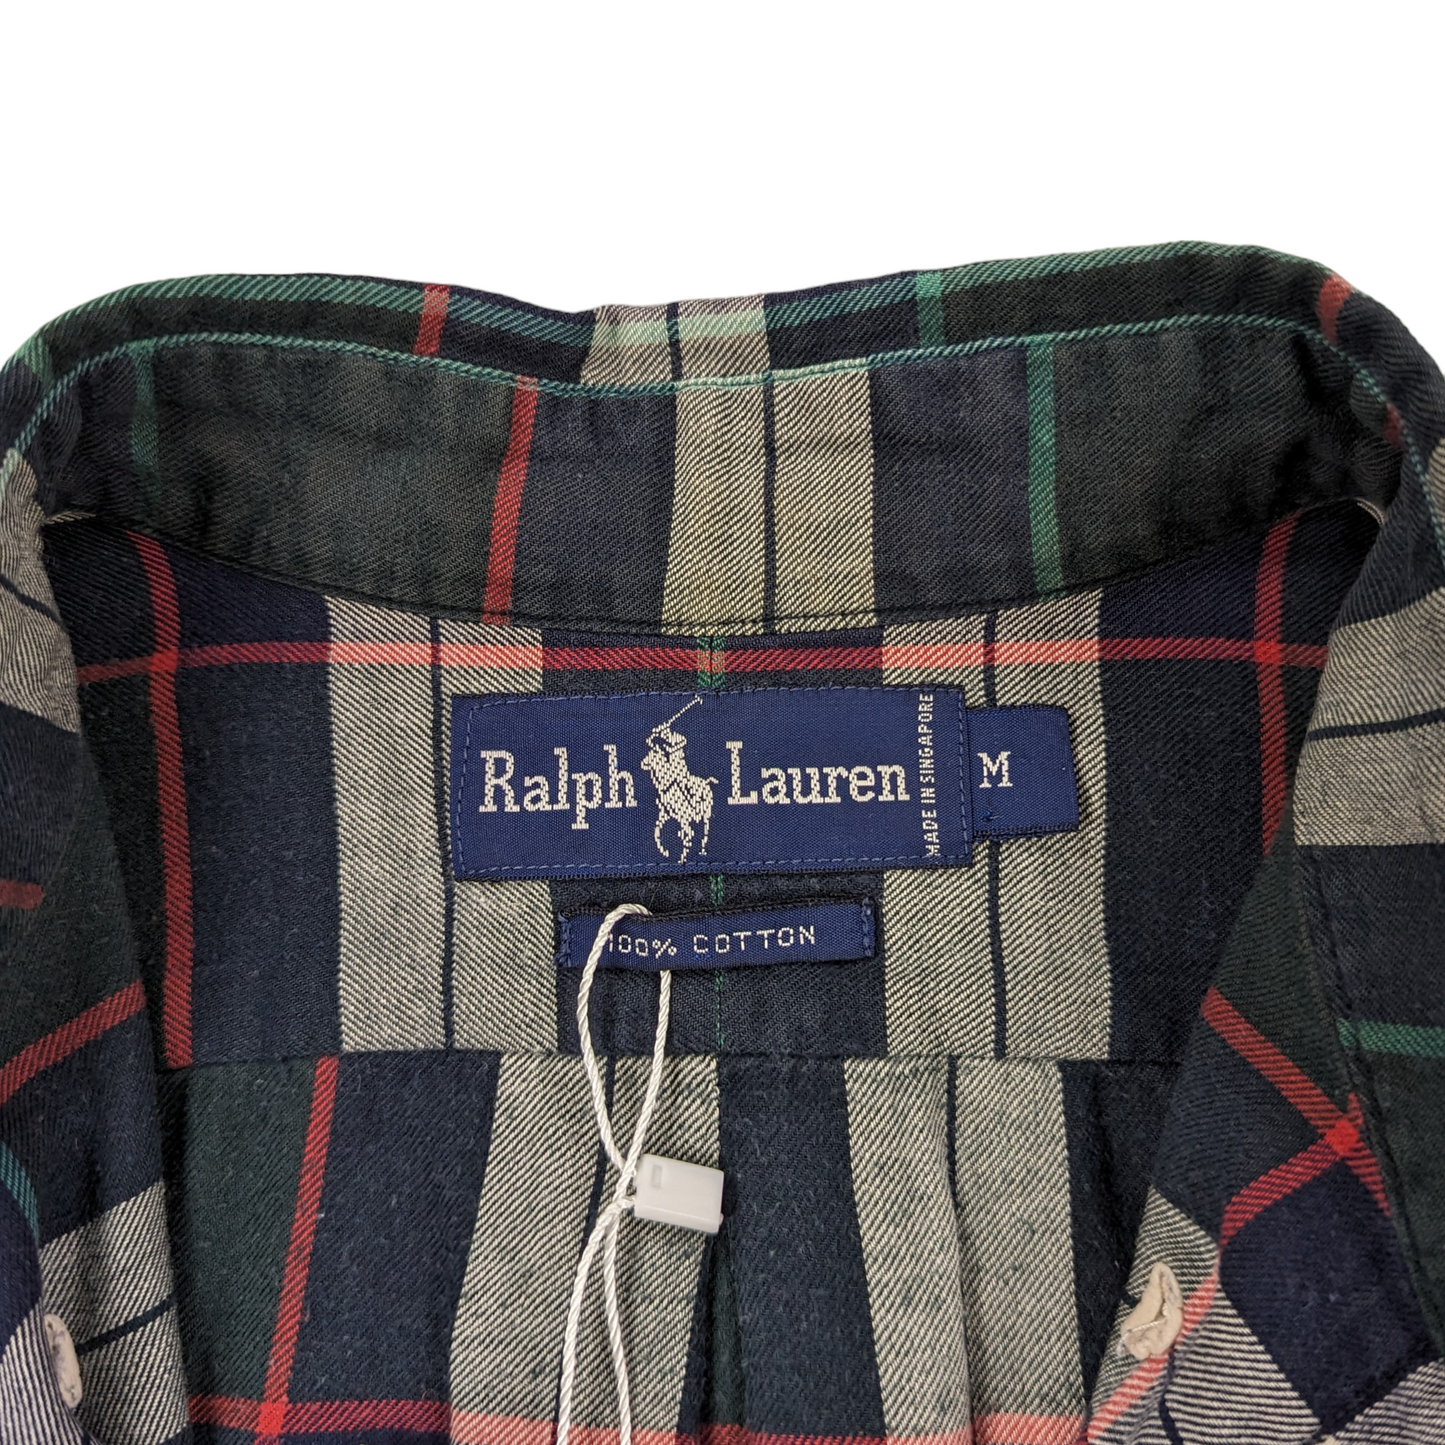 Ralph Lauren Check Shirt Size M